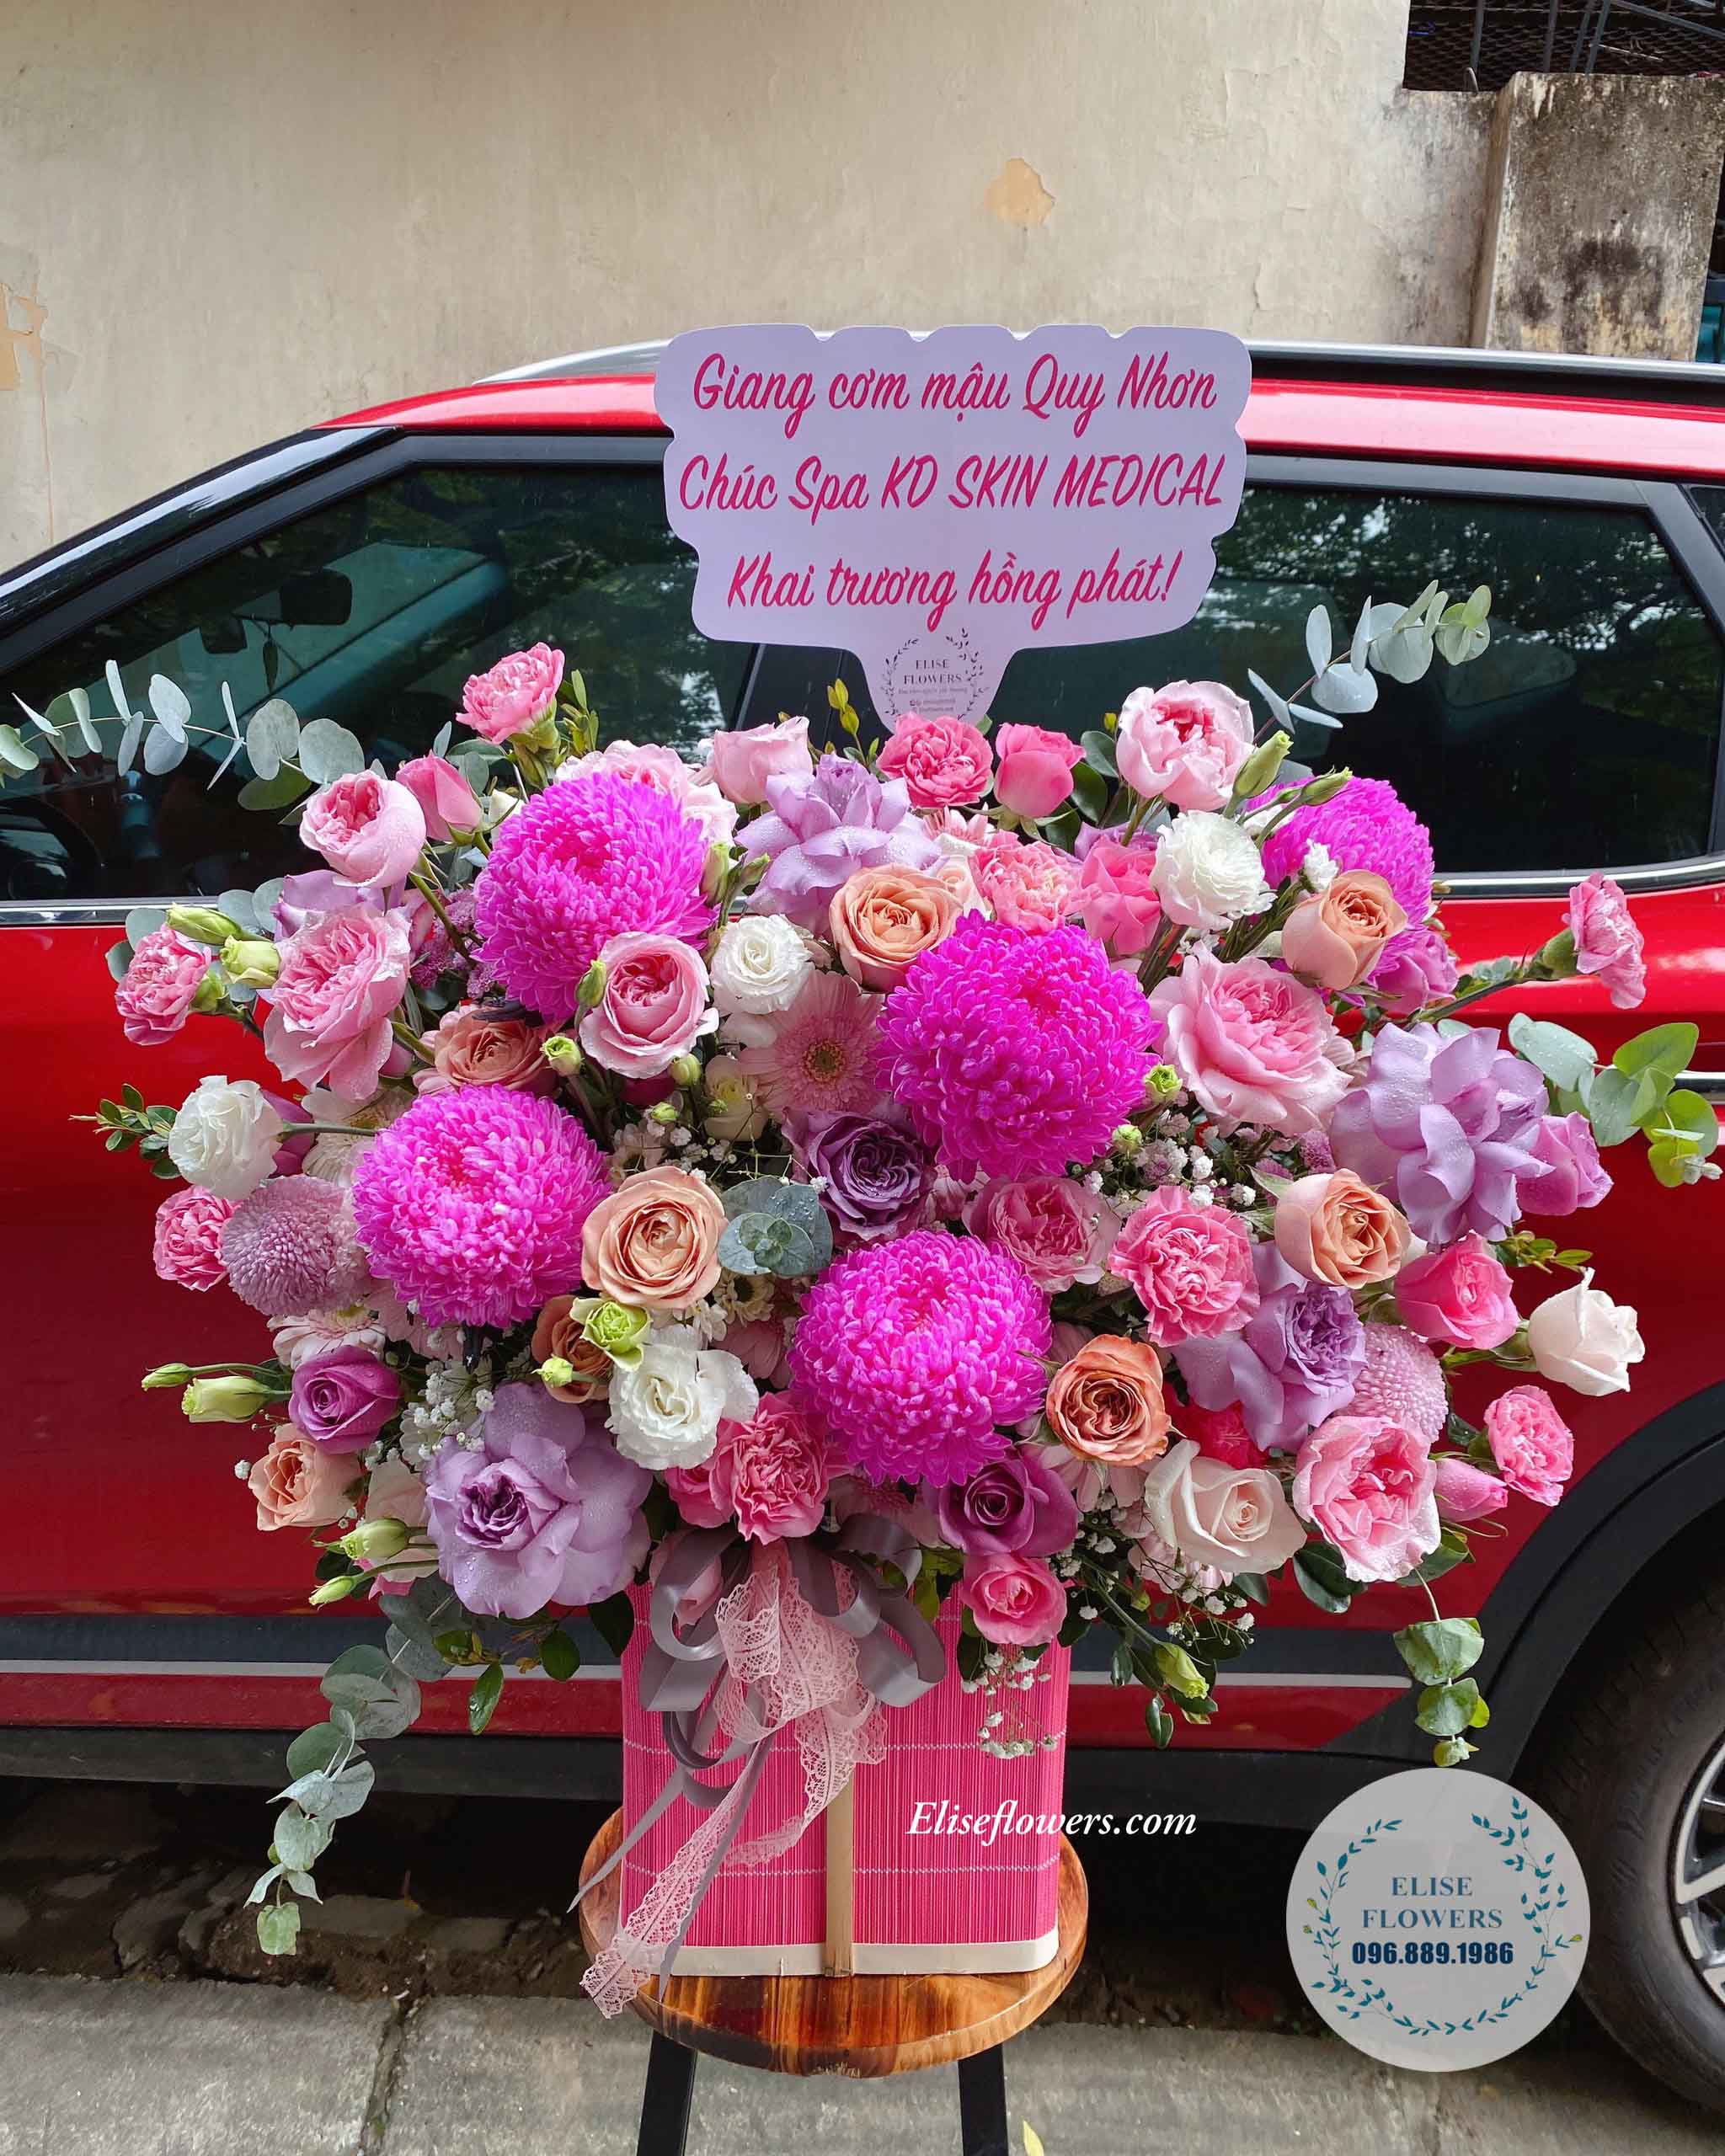 Lẵng hoa để bàn màu tím hồng quý phái chúc mừng khai trương | Hoa khai trương Hà Nội